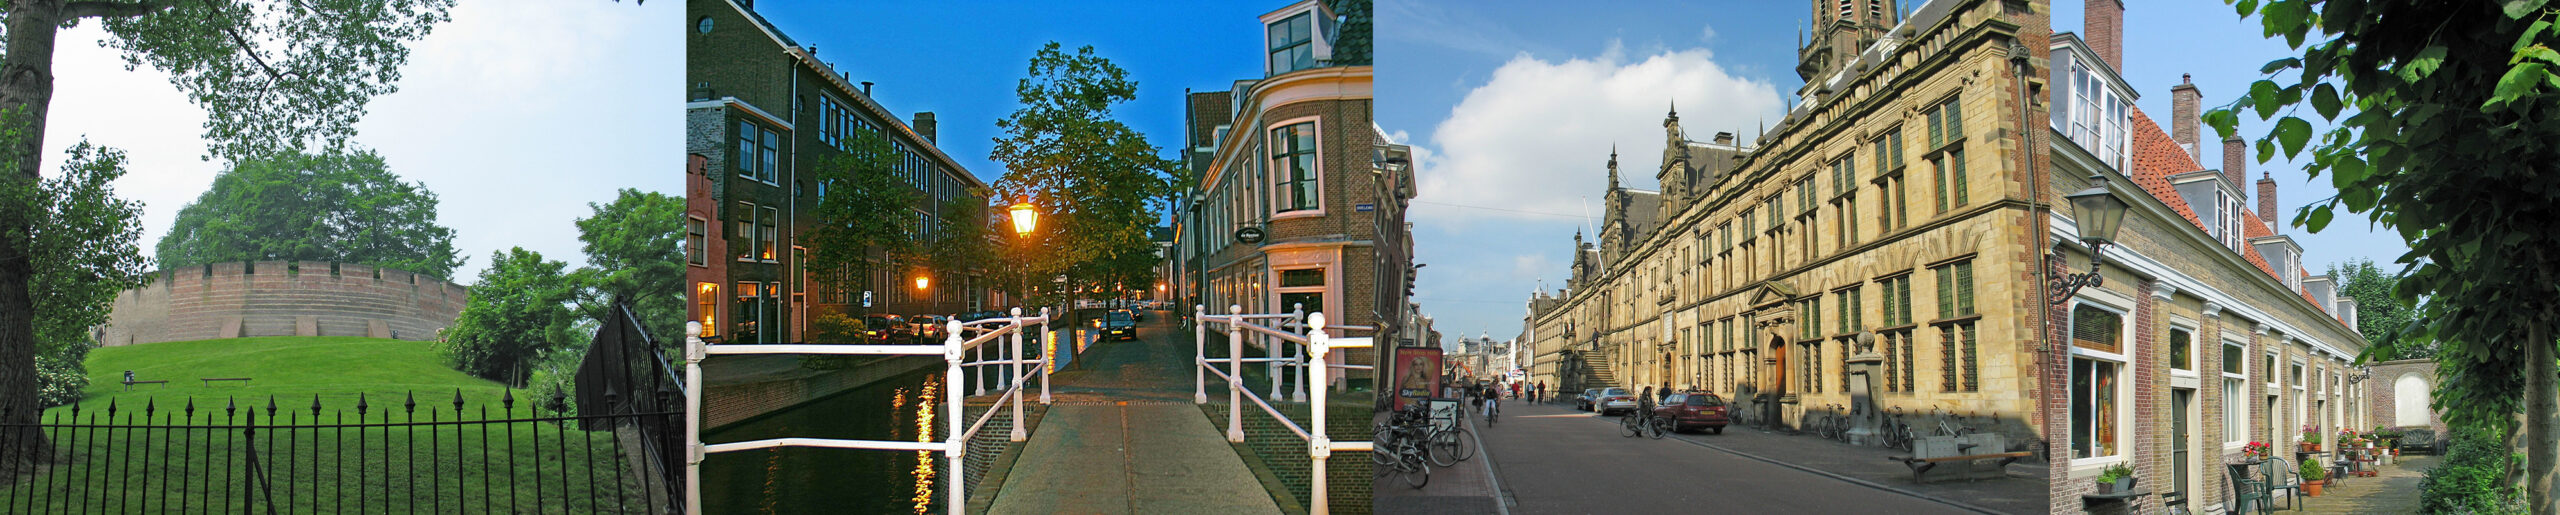 Meld u nu aan voor de historische stadswandeling door Leiden voor de asieldieren op zondag 15 april!